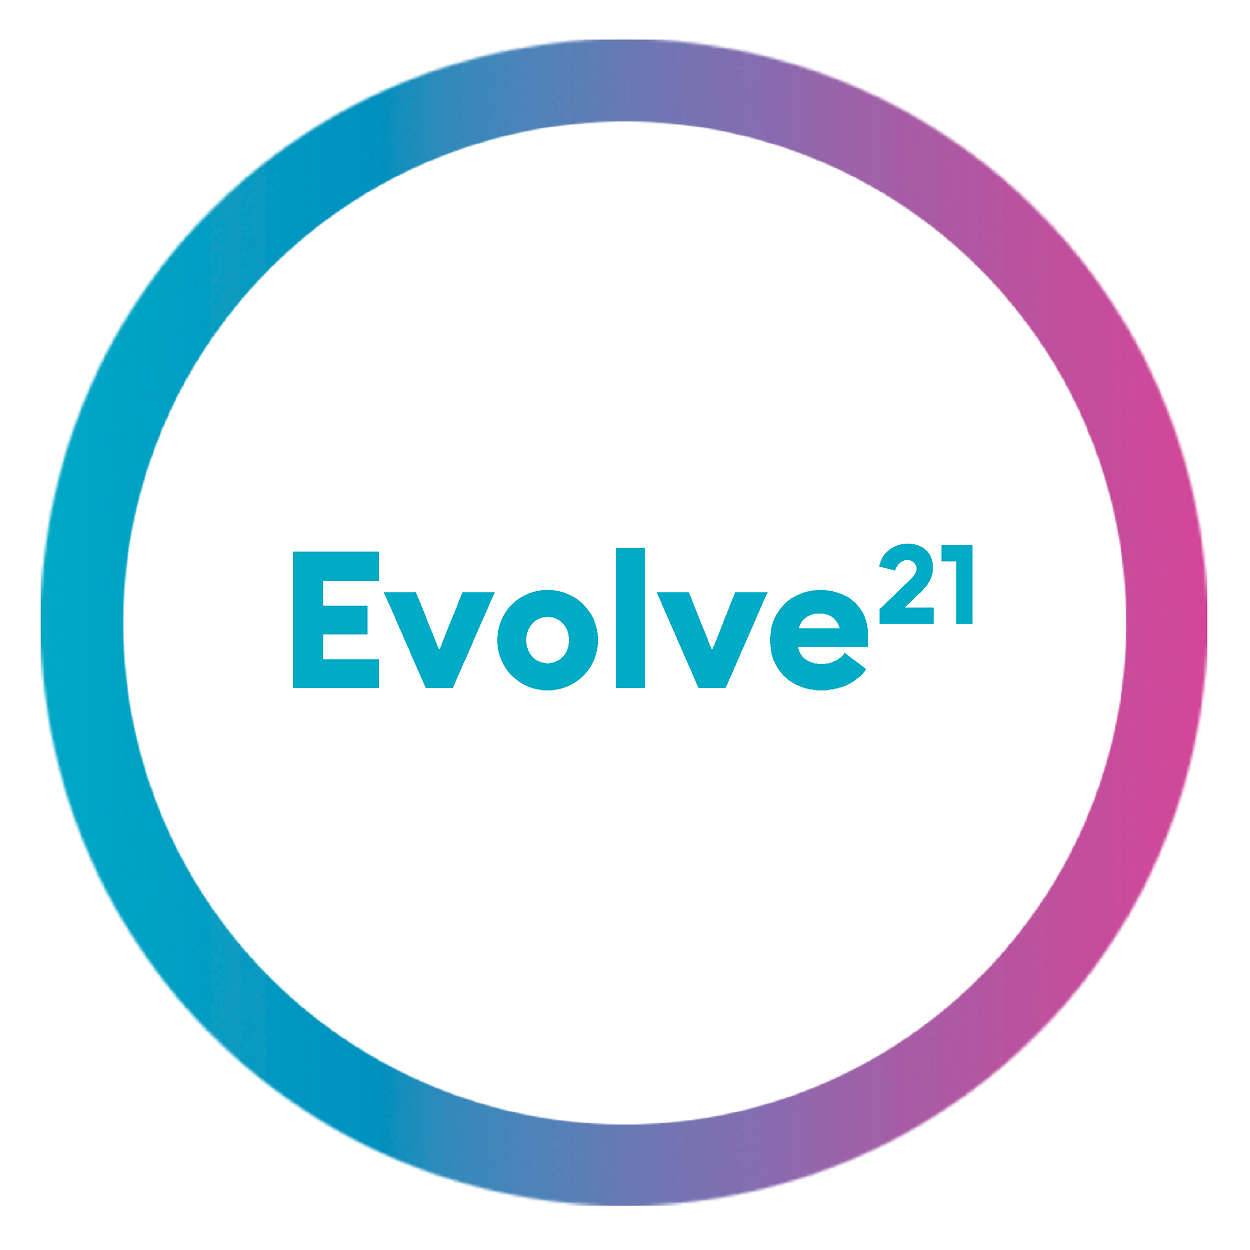 Evolve 21 - Campaign